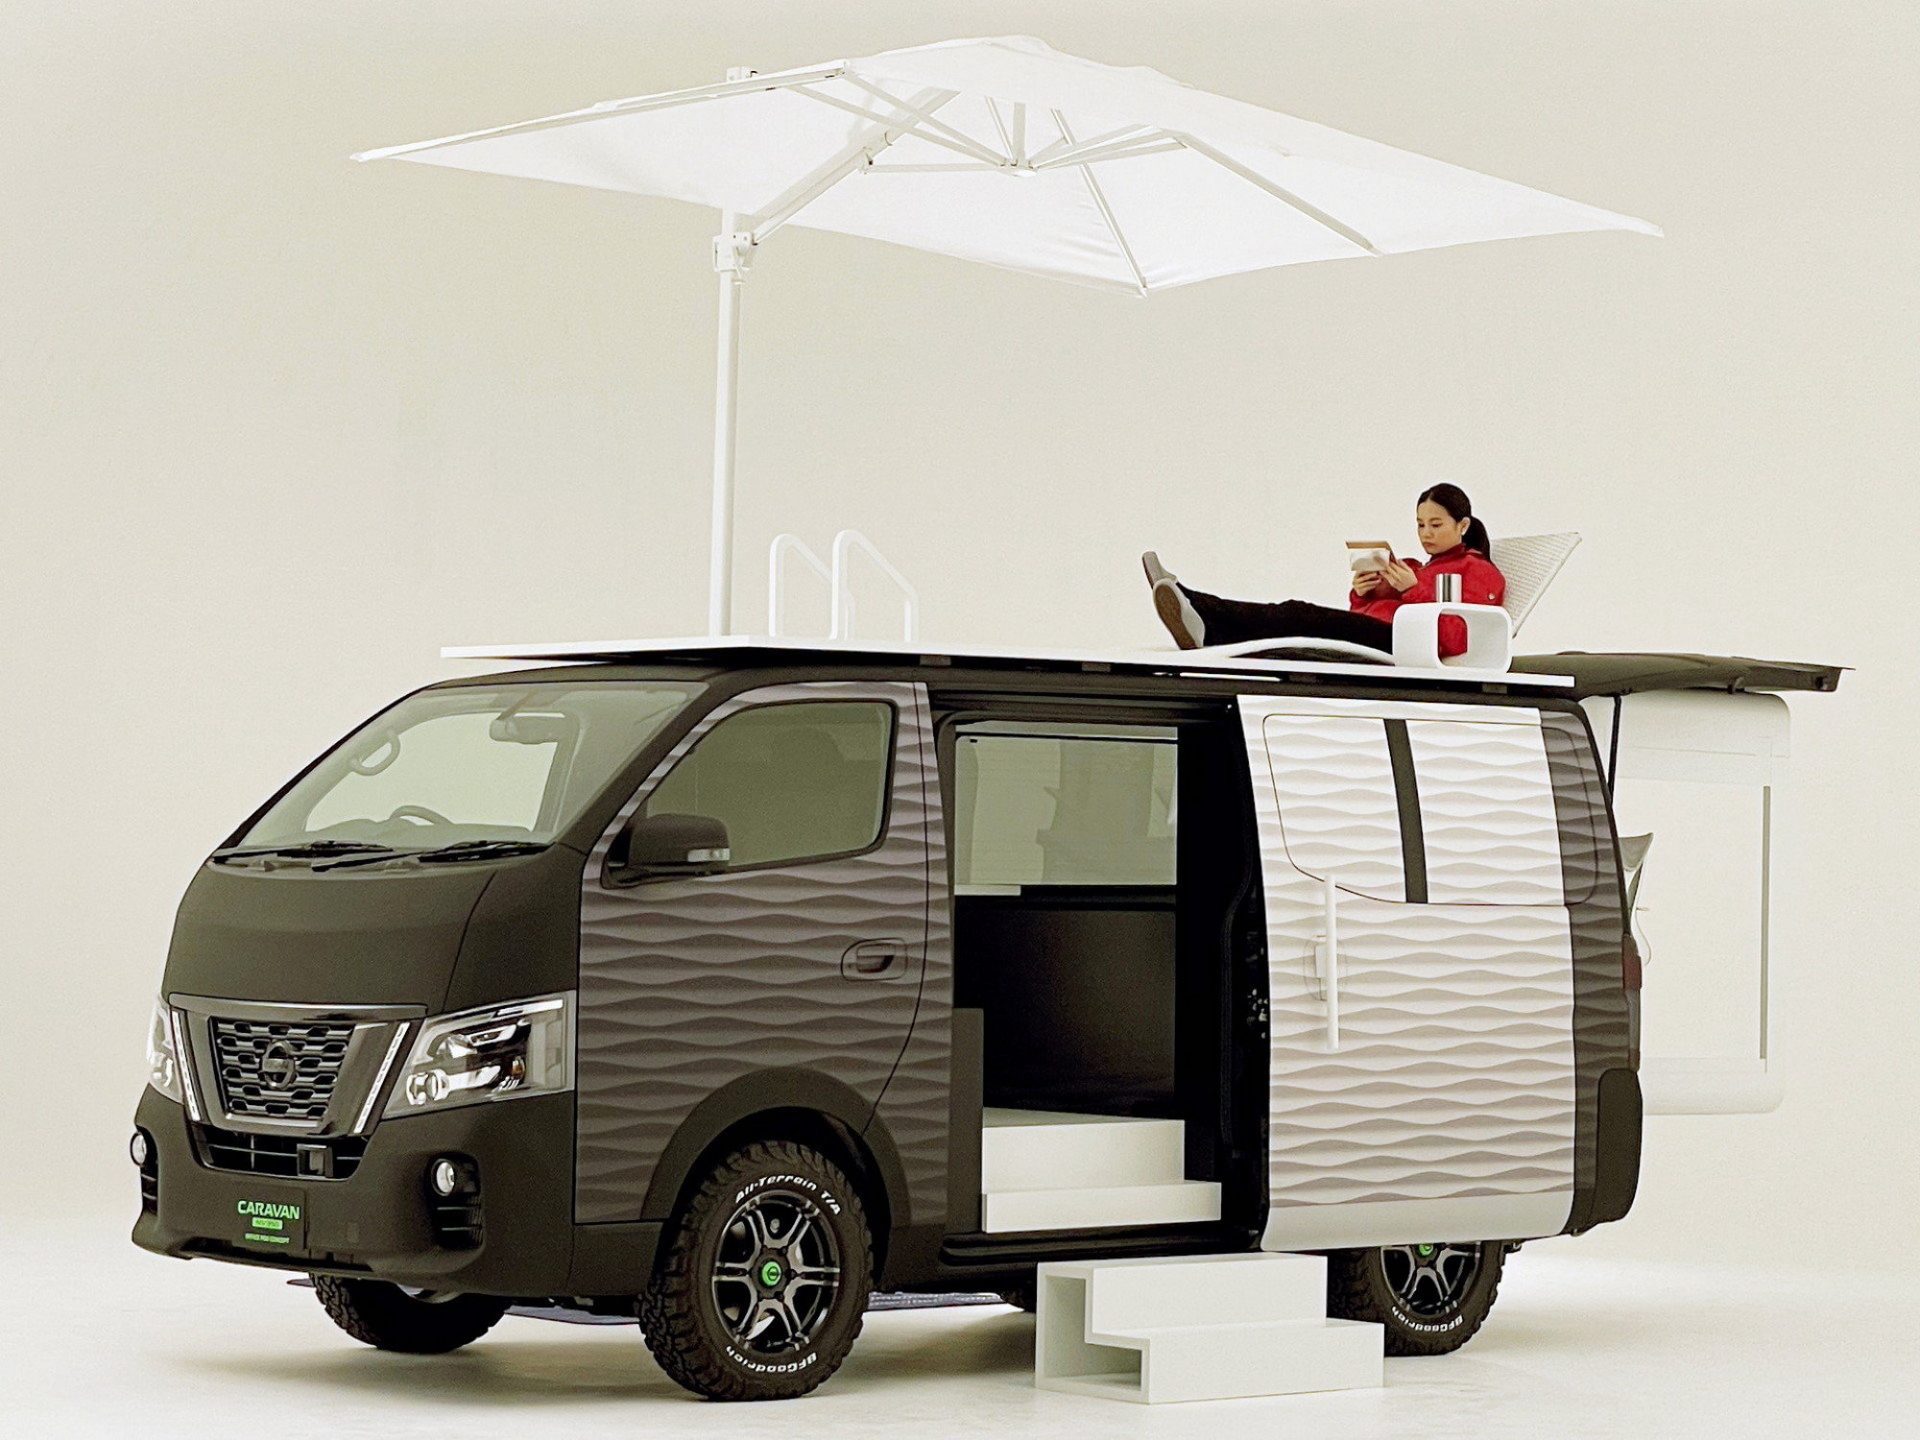 Nissan dévoile un van qui intègre un bureau mobile pour travailler partout